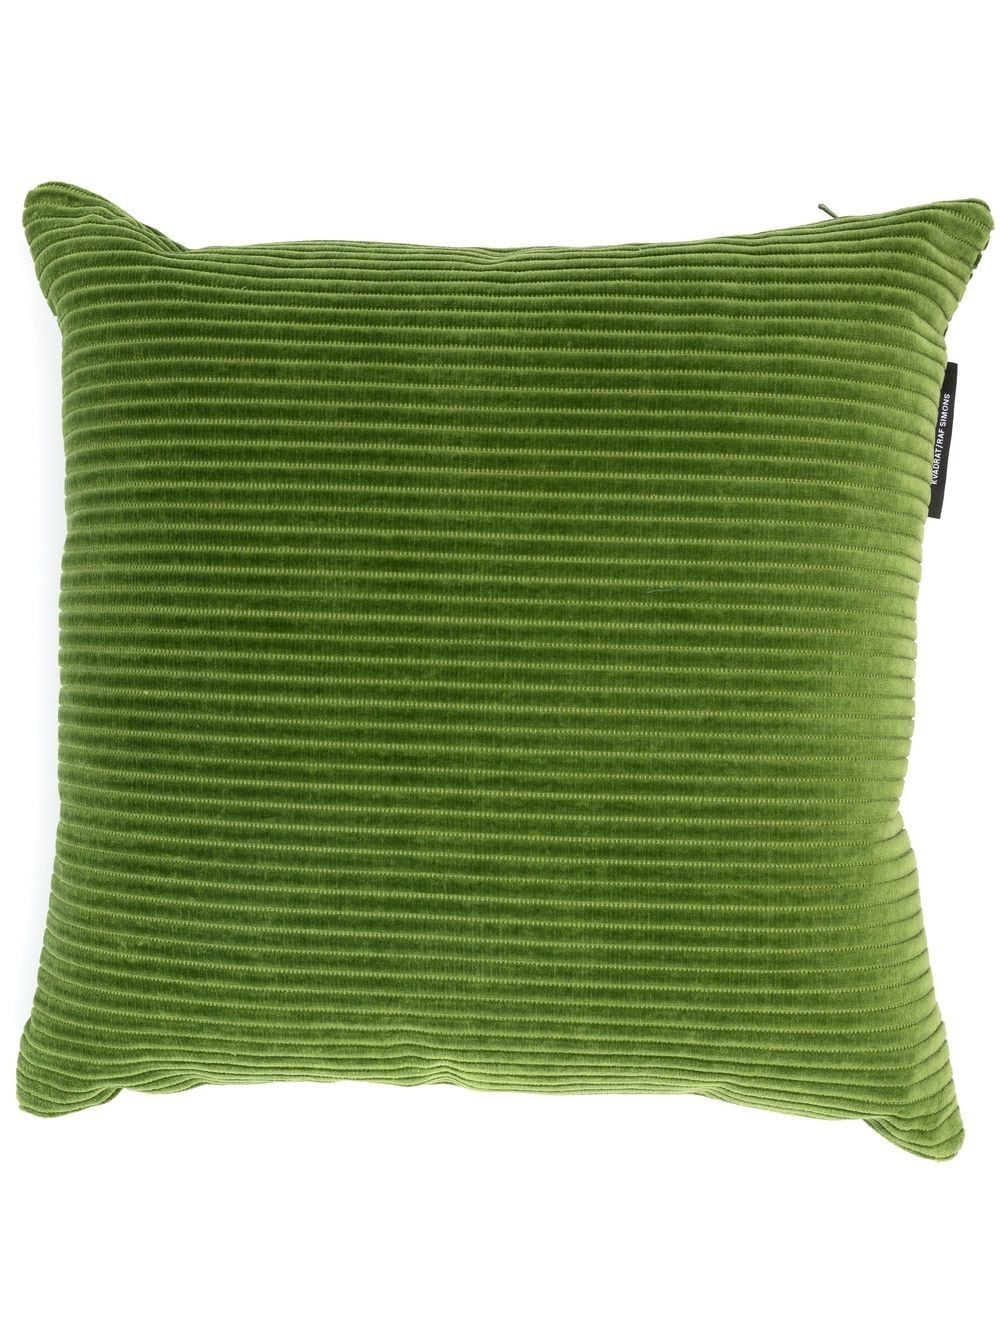 Les accessoires vert minimaliste, Simons Maison